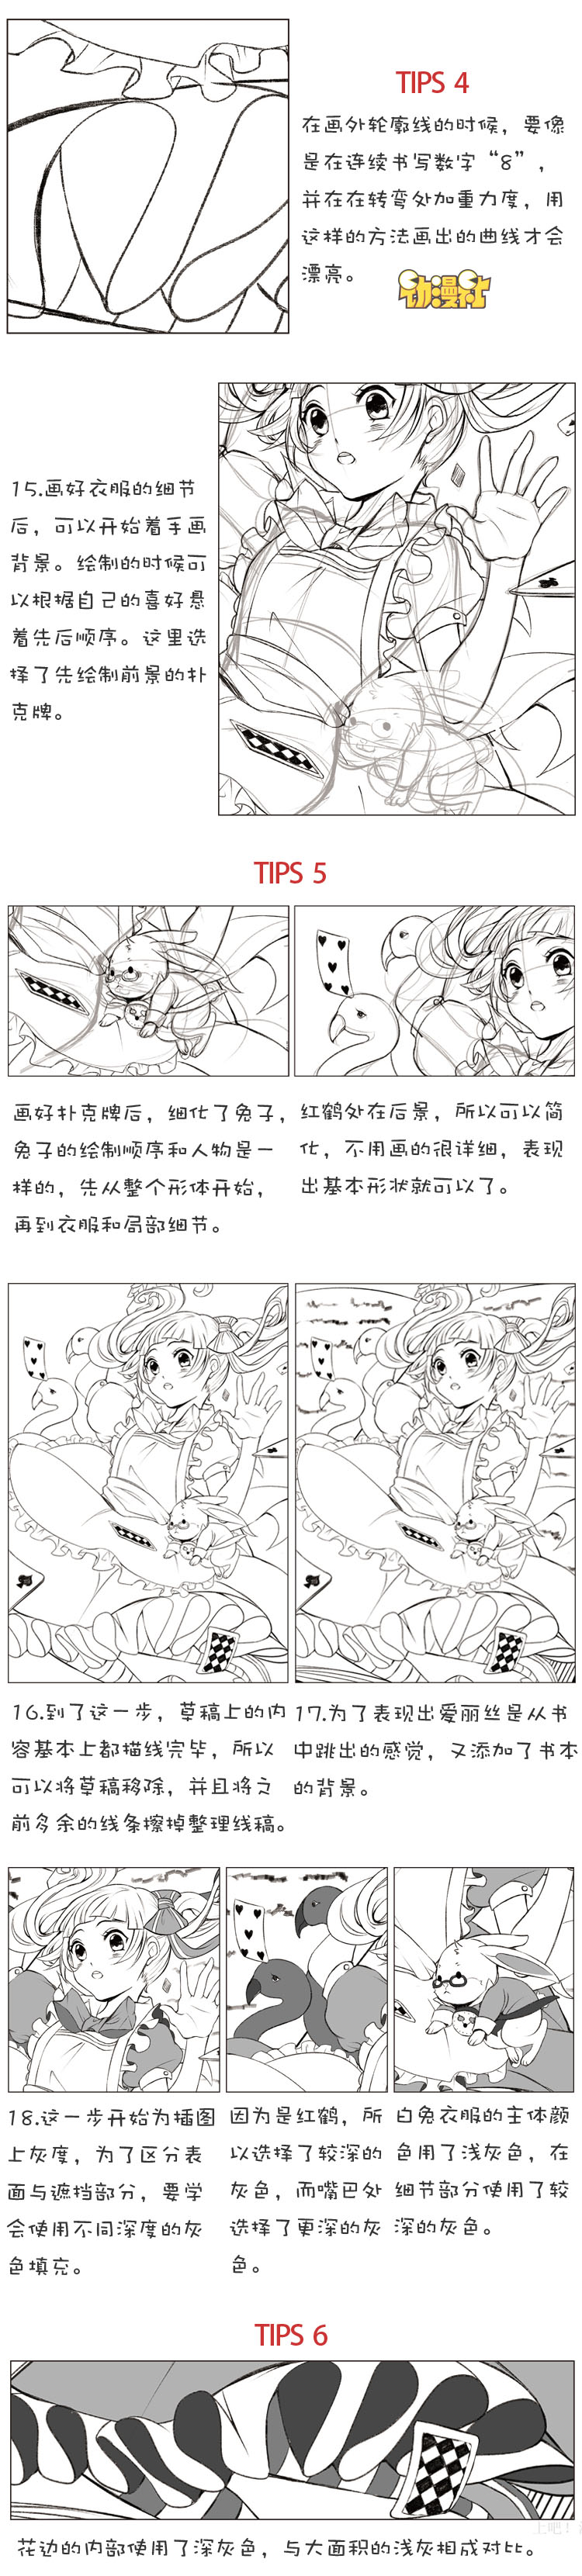 『转载自新浪@CC动漫社』#CC娘微漫堂#漫画手绘教程！从小白做起吧！